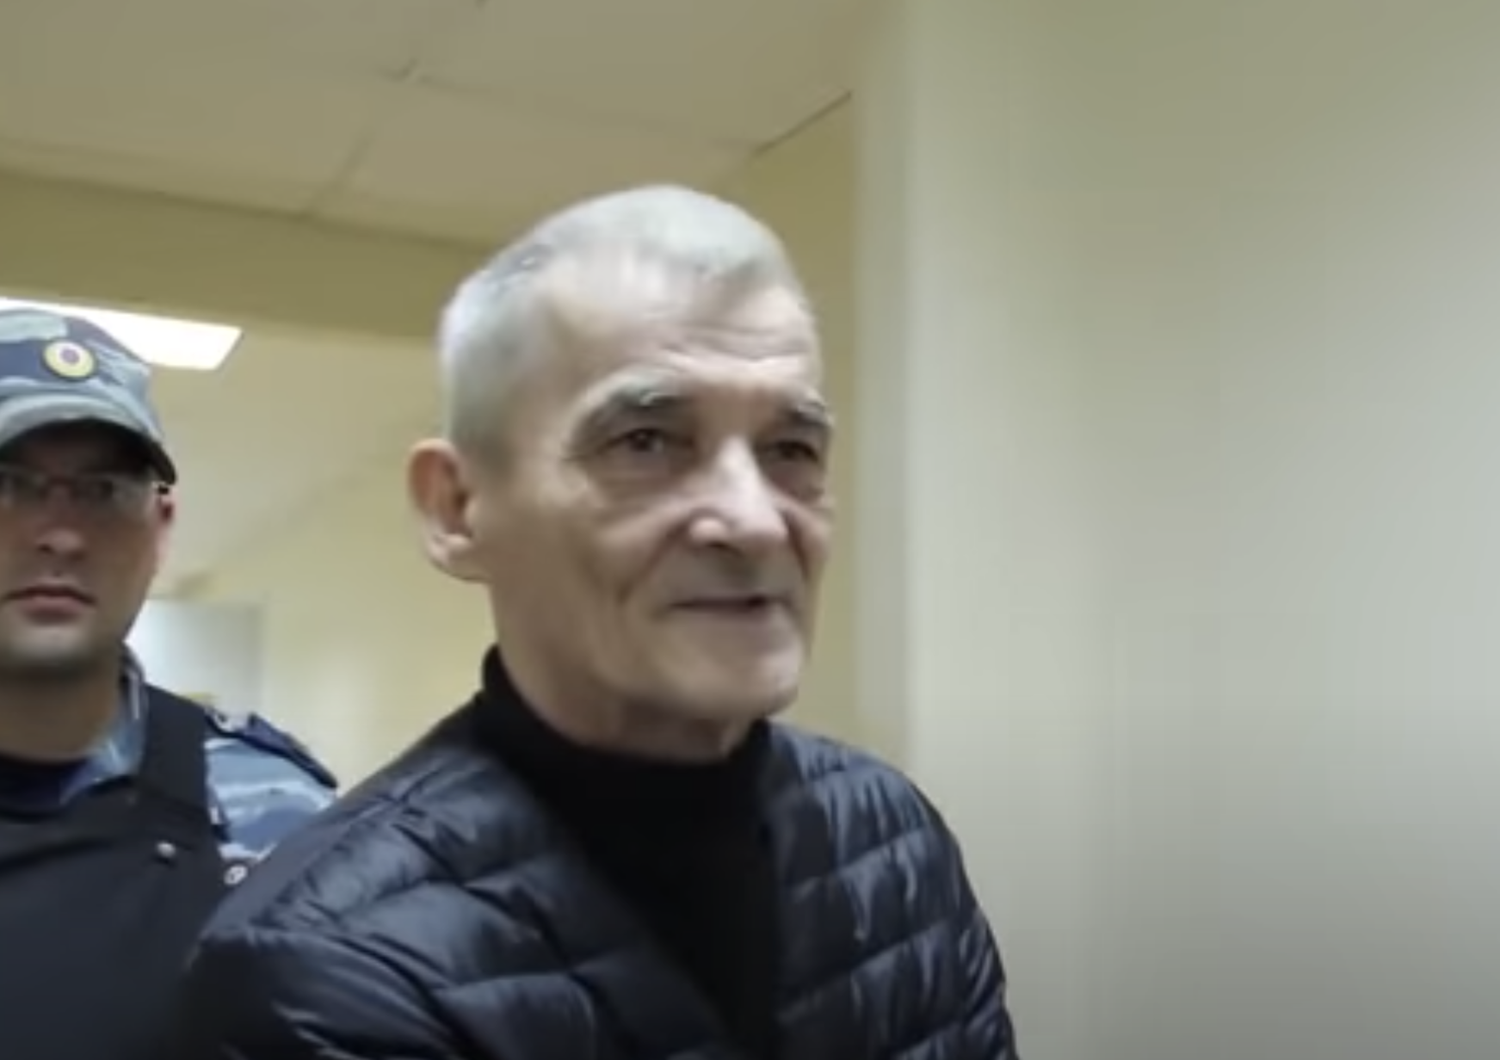 Russia storico Gulag rischia 15 anni carcere